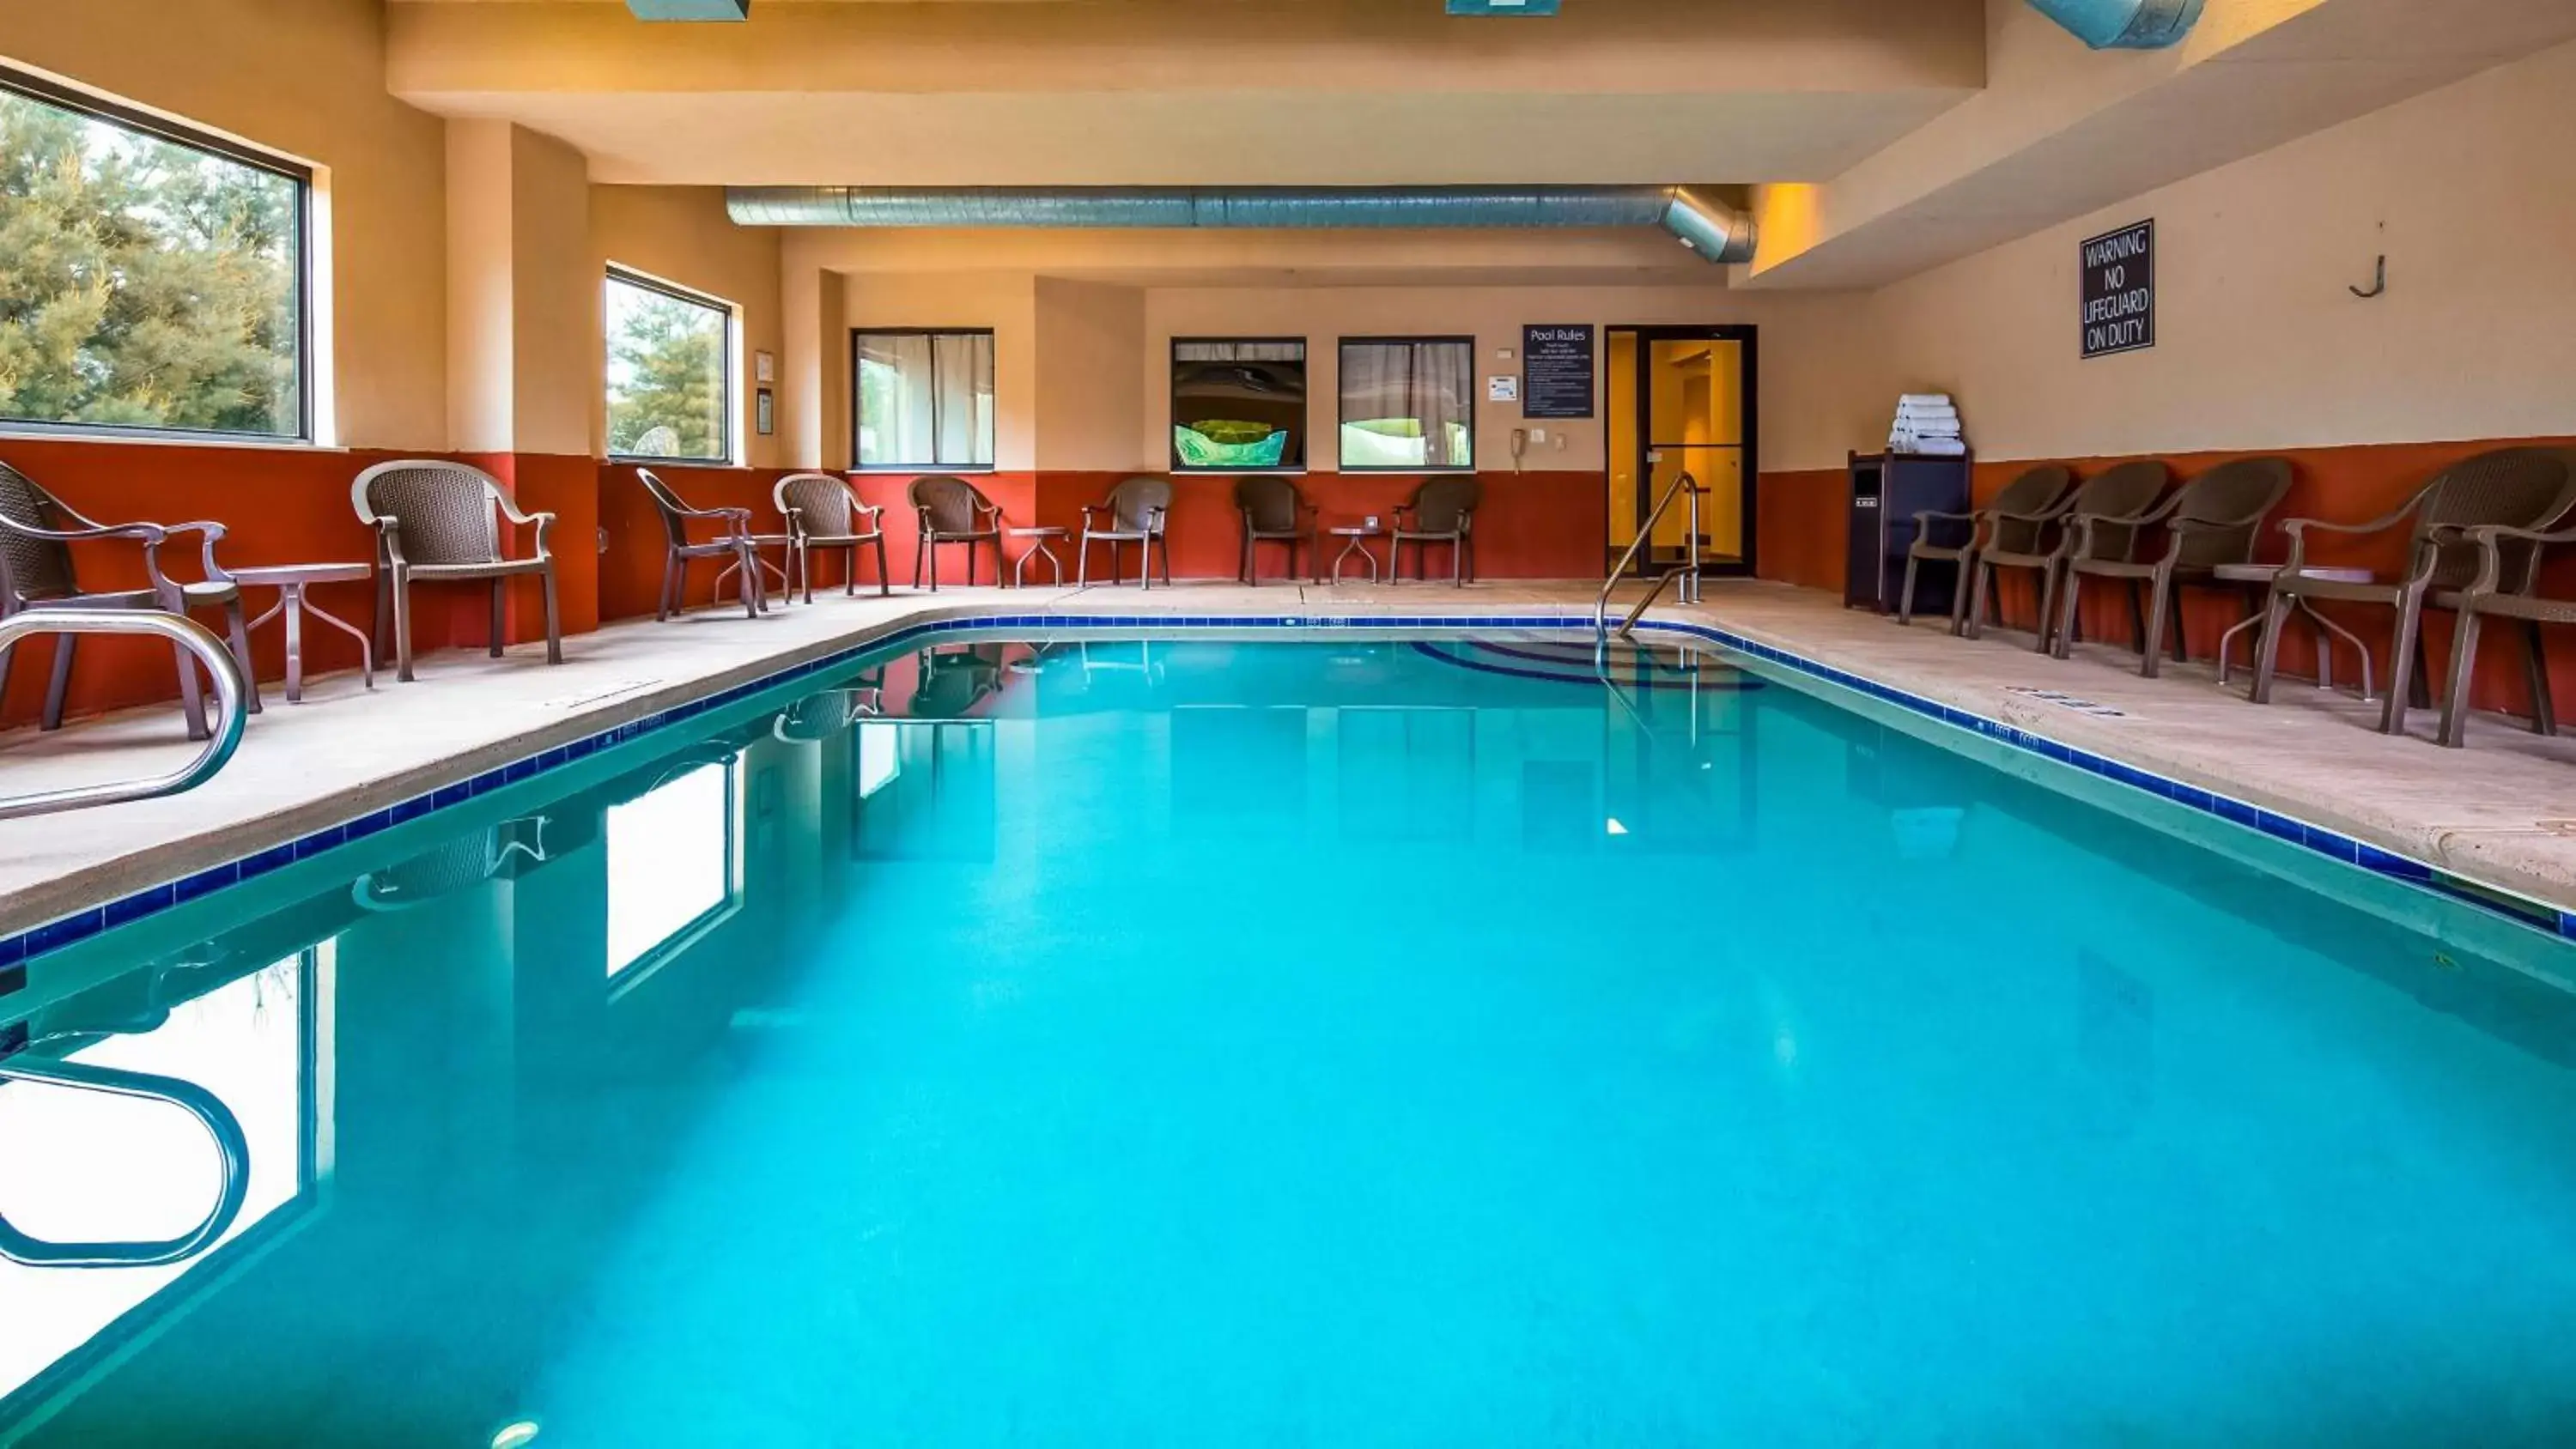 On site, Swimming Pool in Best Western Danville Inn